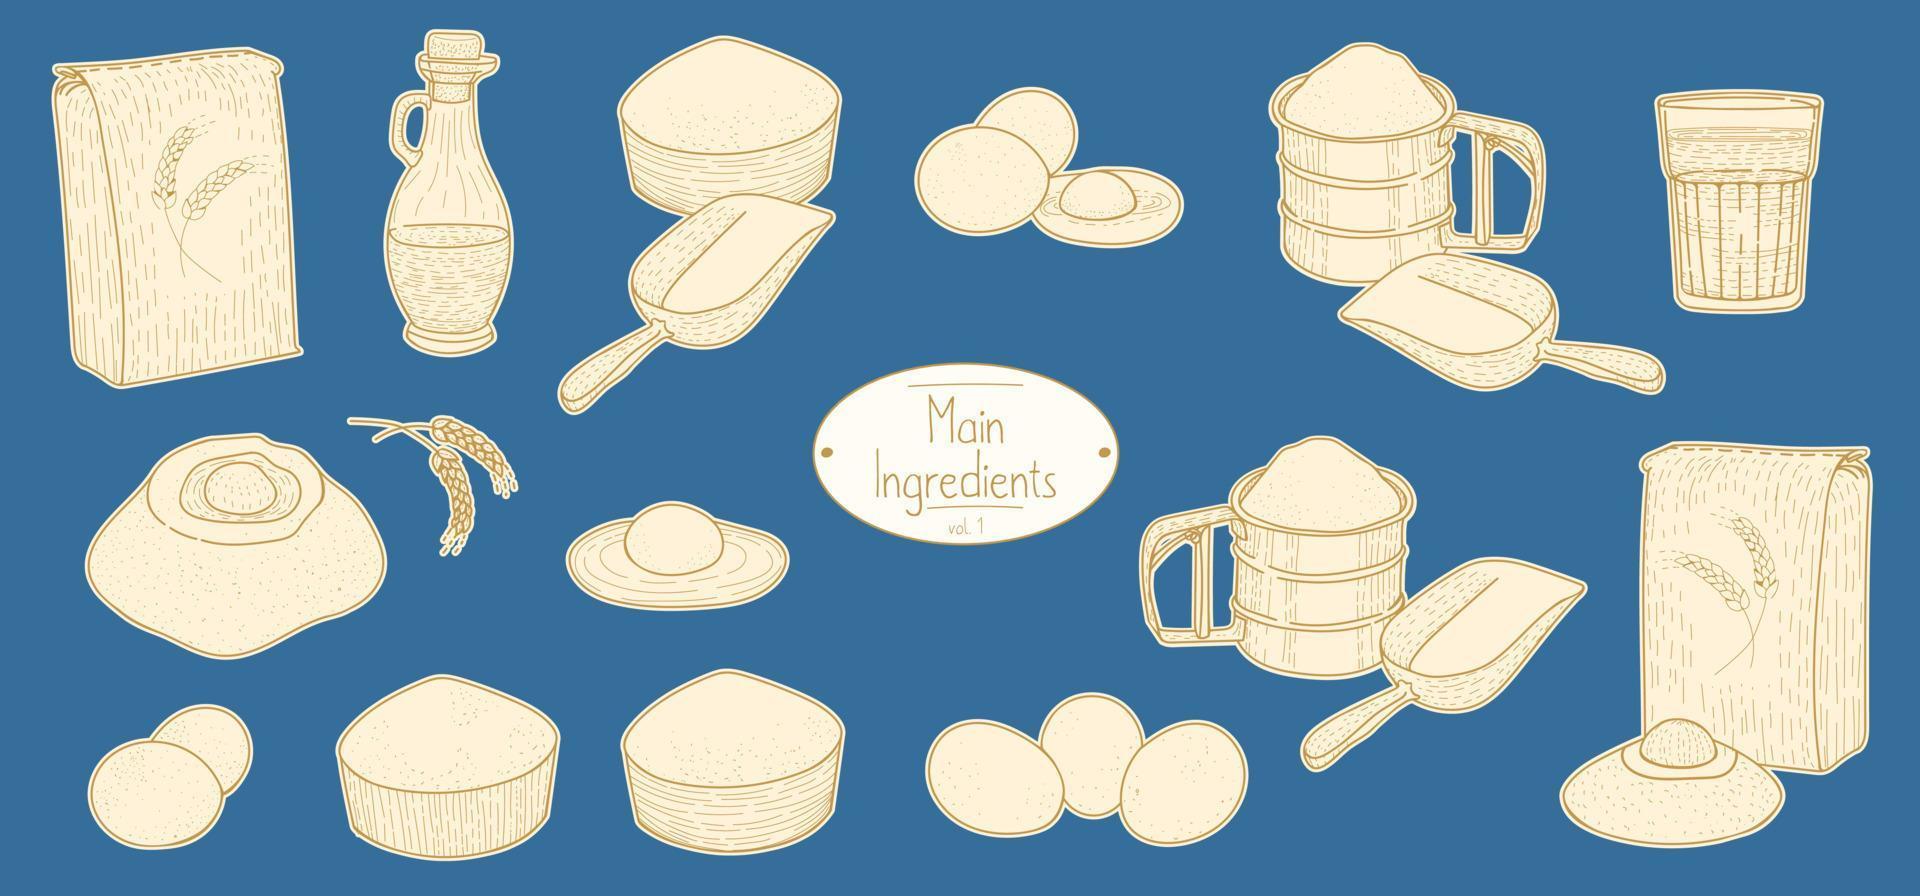 ingredientes principales para la receta de pasta de comida italiana, dibujando la ilustración en estilo retro vector